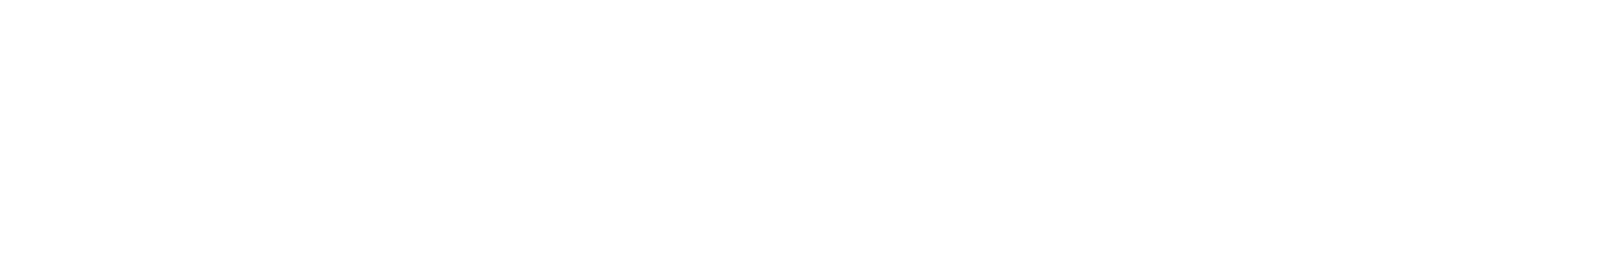 Krafton logo grand pour les fonds sombres (PNG transparent)